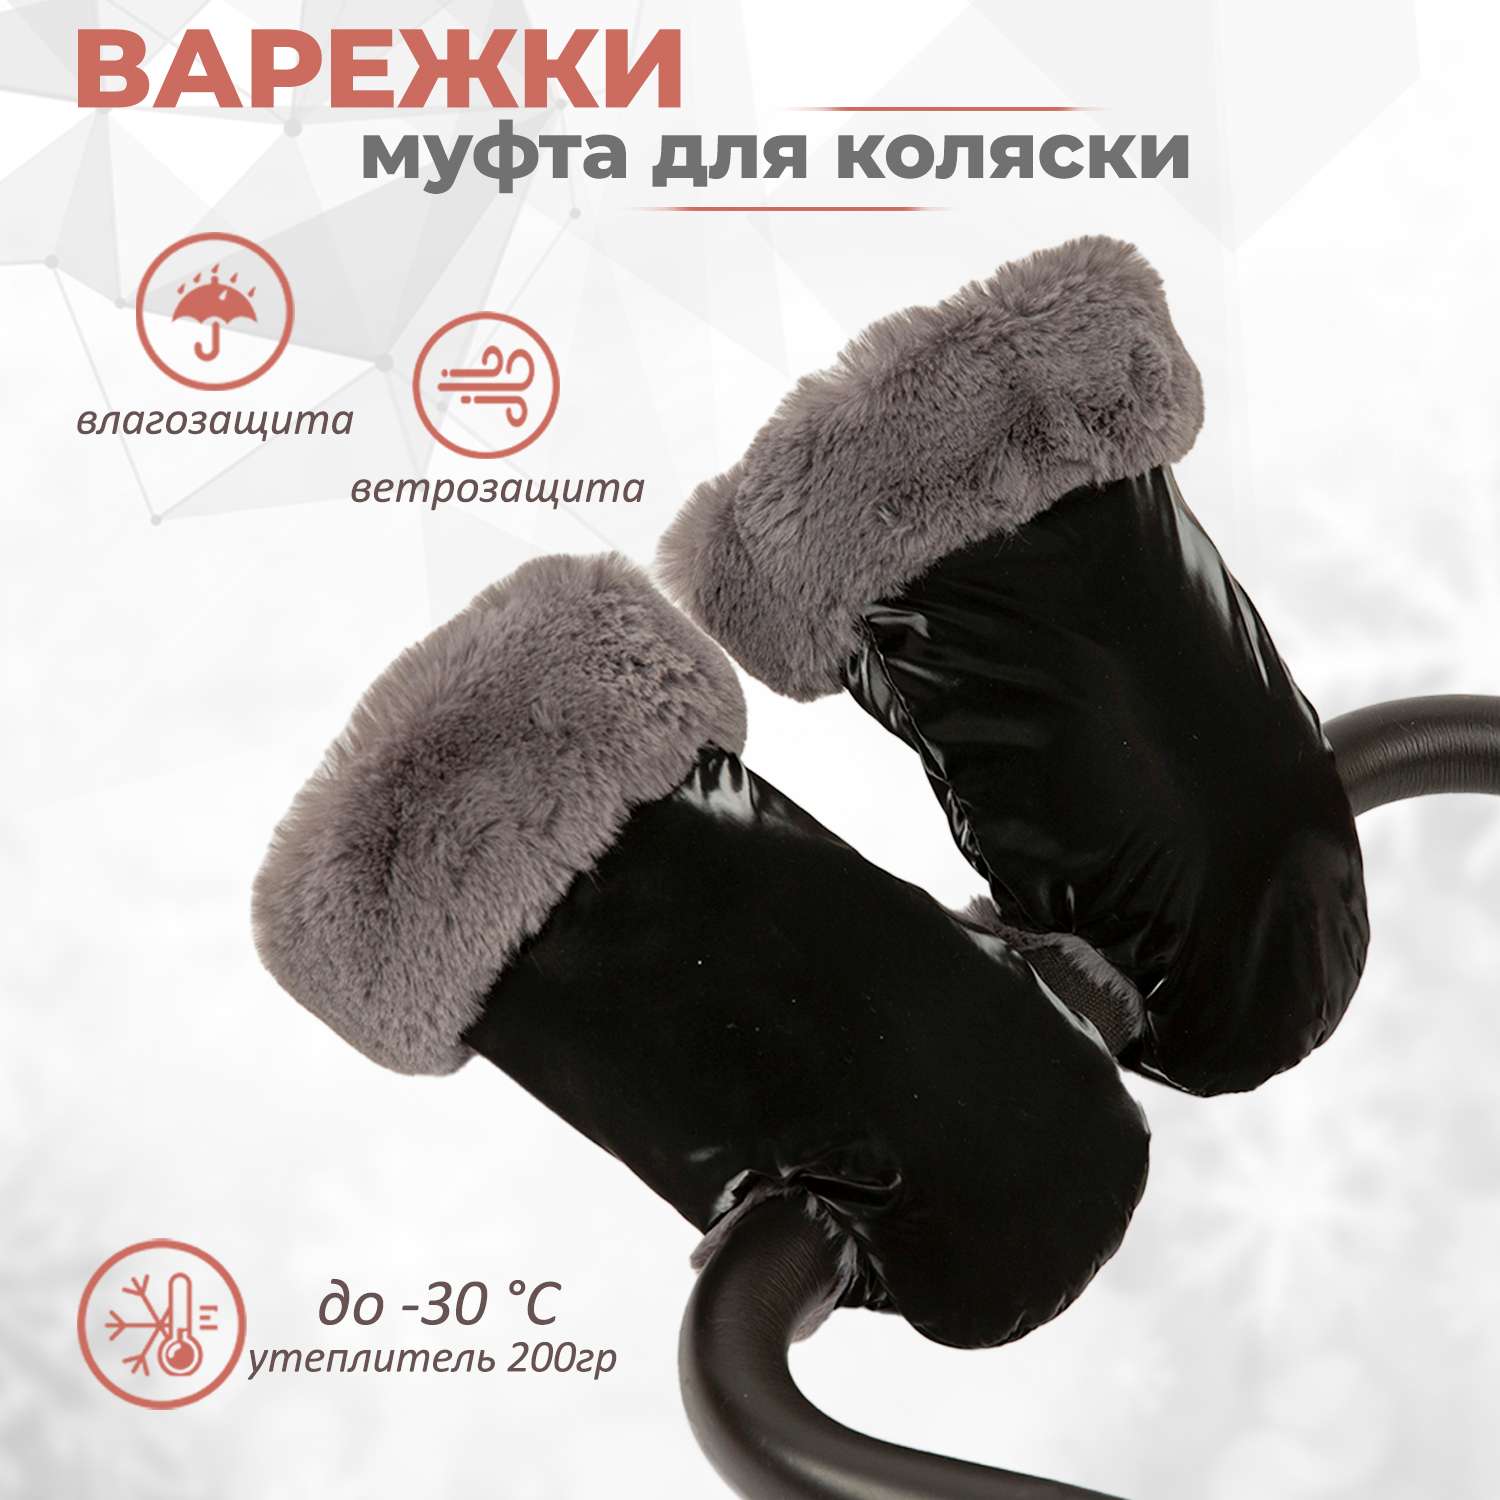 Муфта-рукавички для коляски inlovery Lakke/черный МРЛ01-003 - фото 1